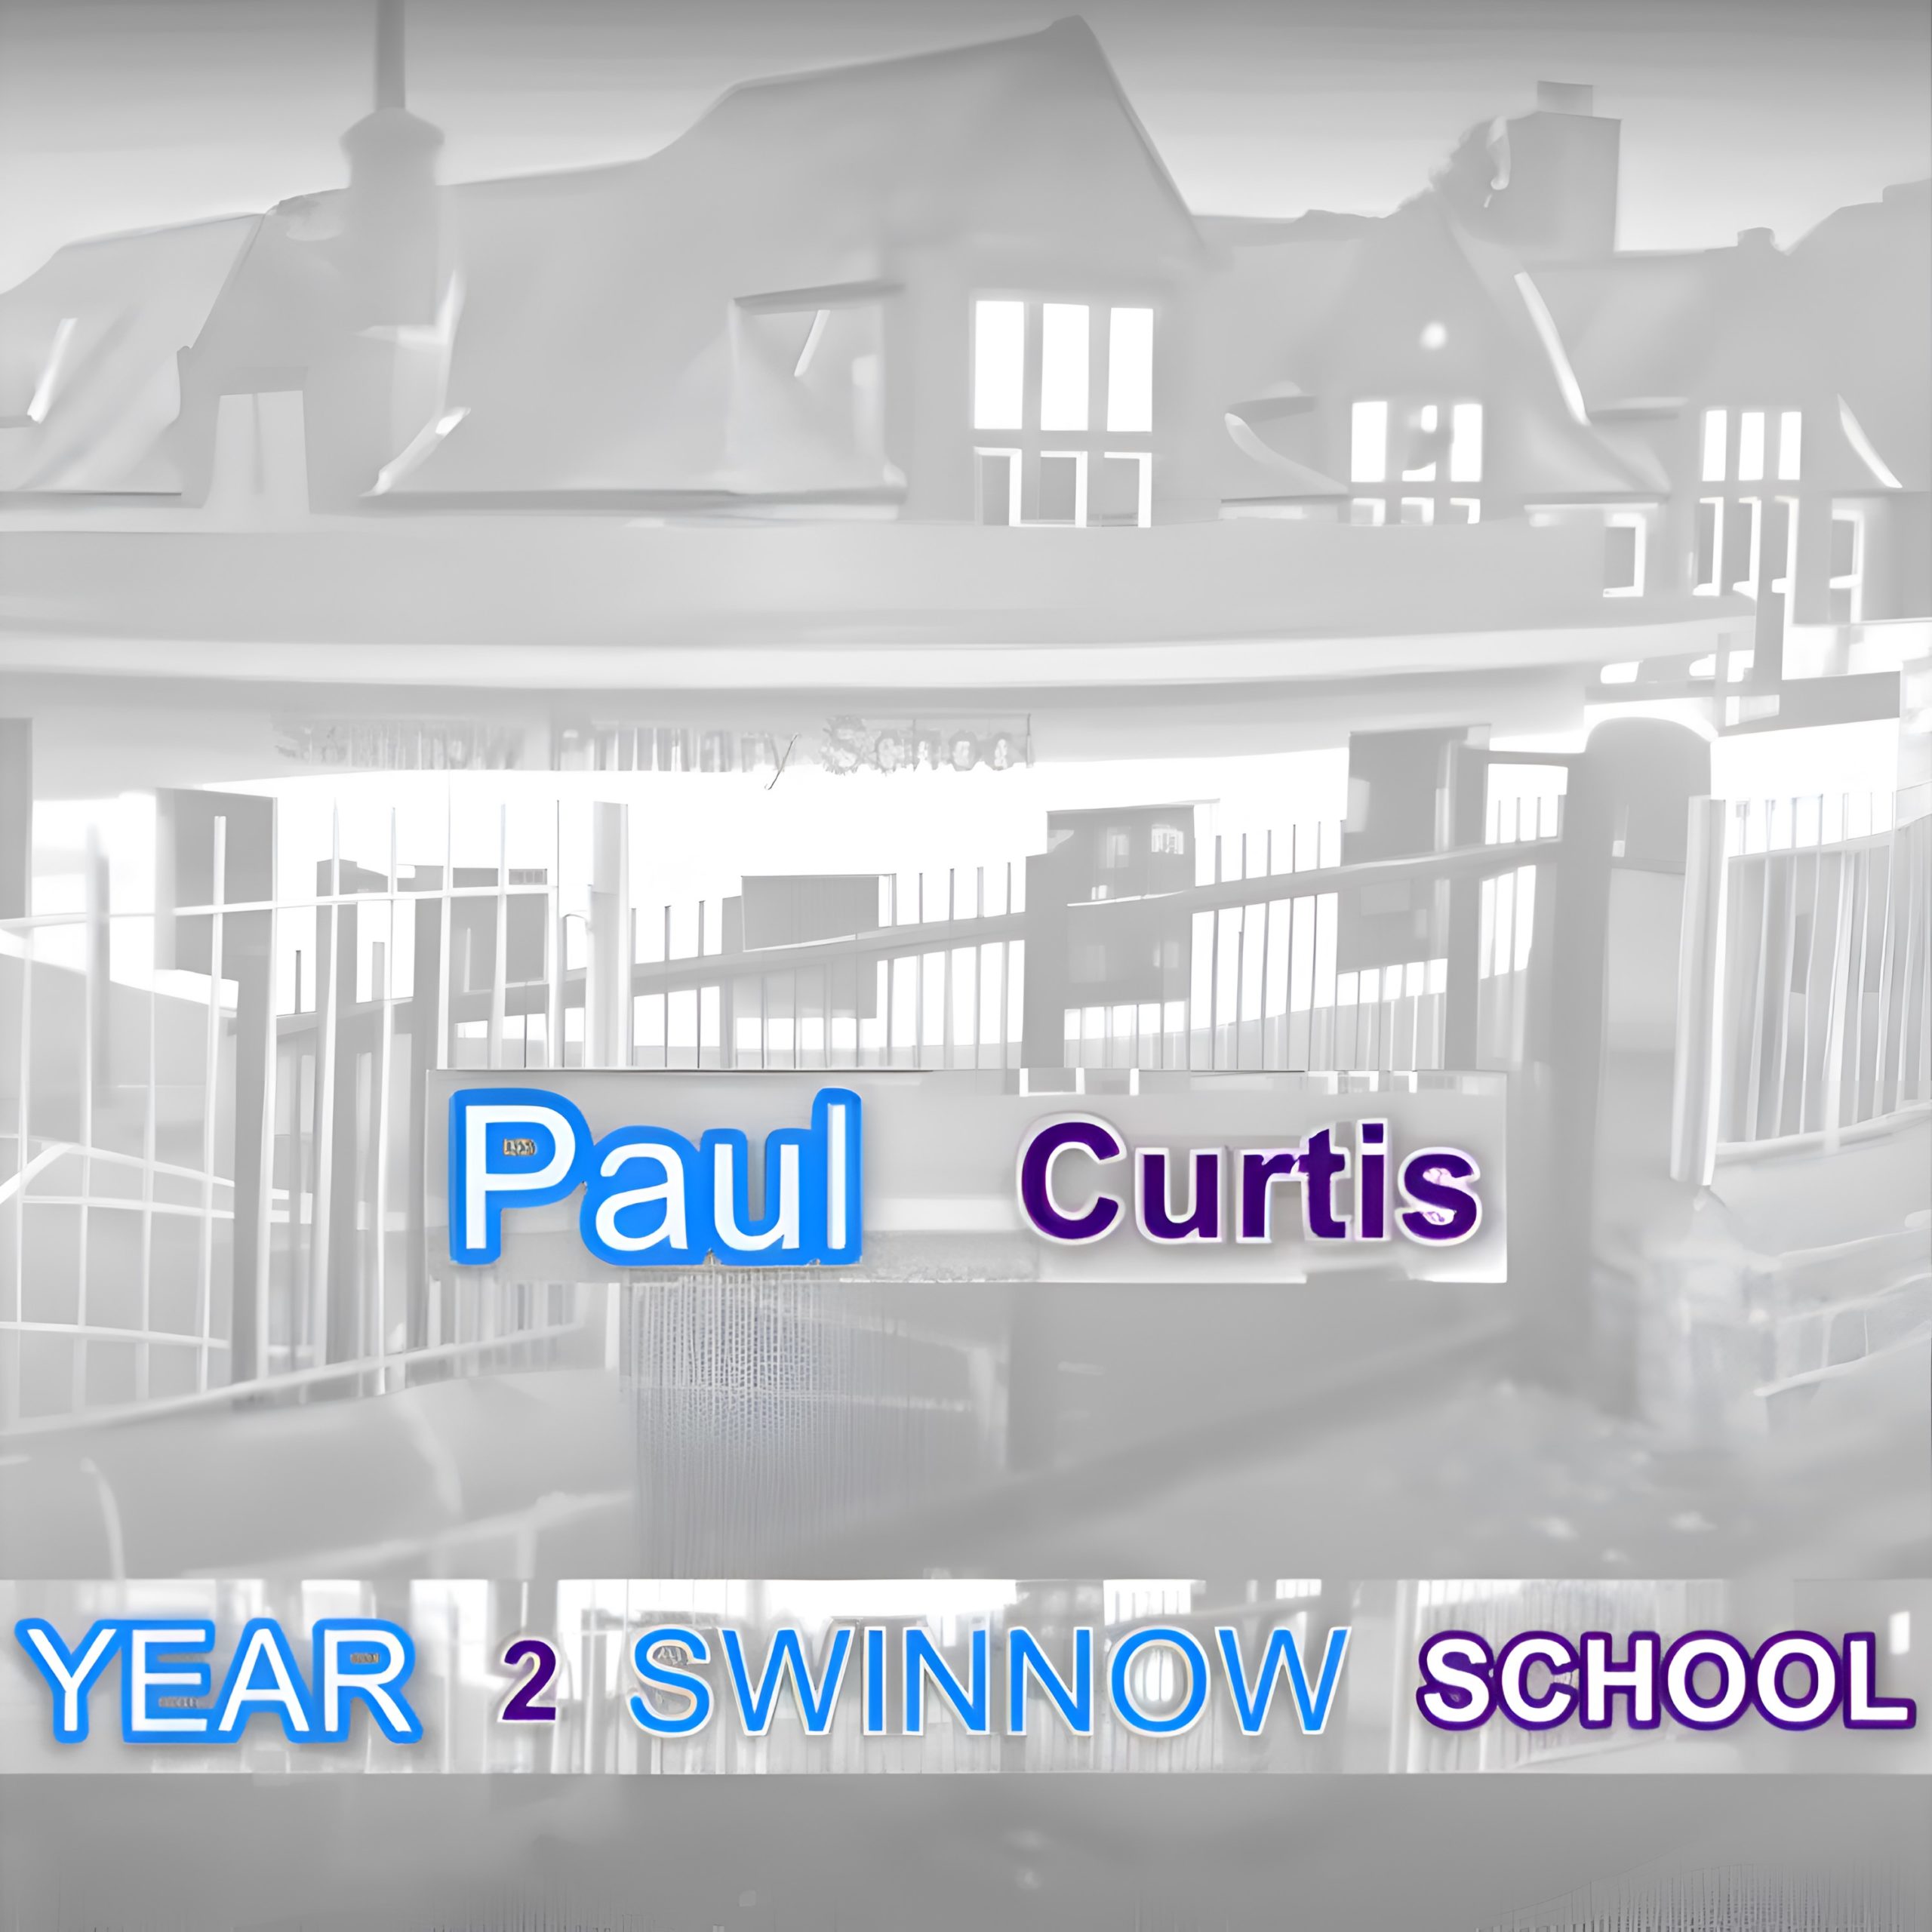 Year 2 Swinnow School